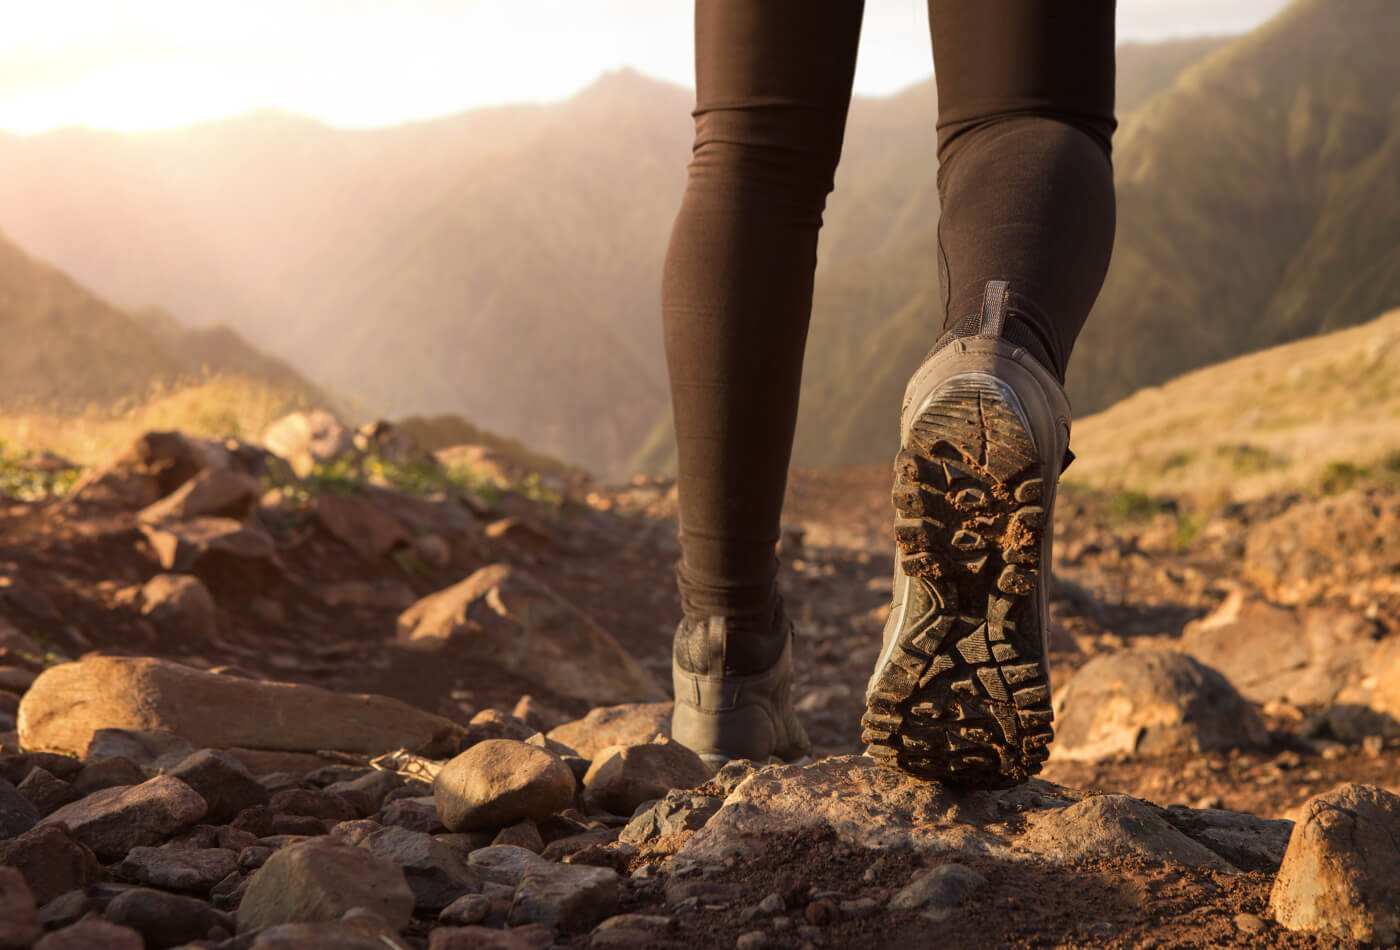 A woman wearing walking boots hiking along a stone path